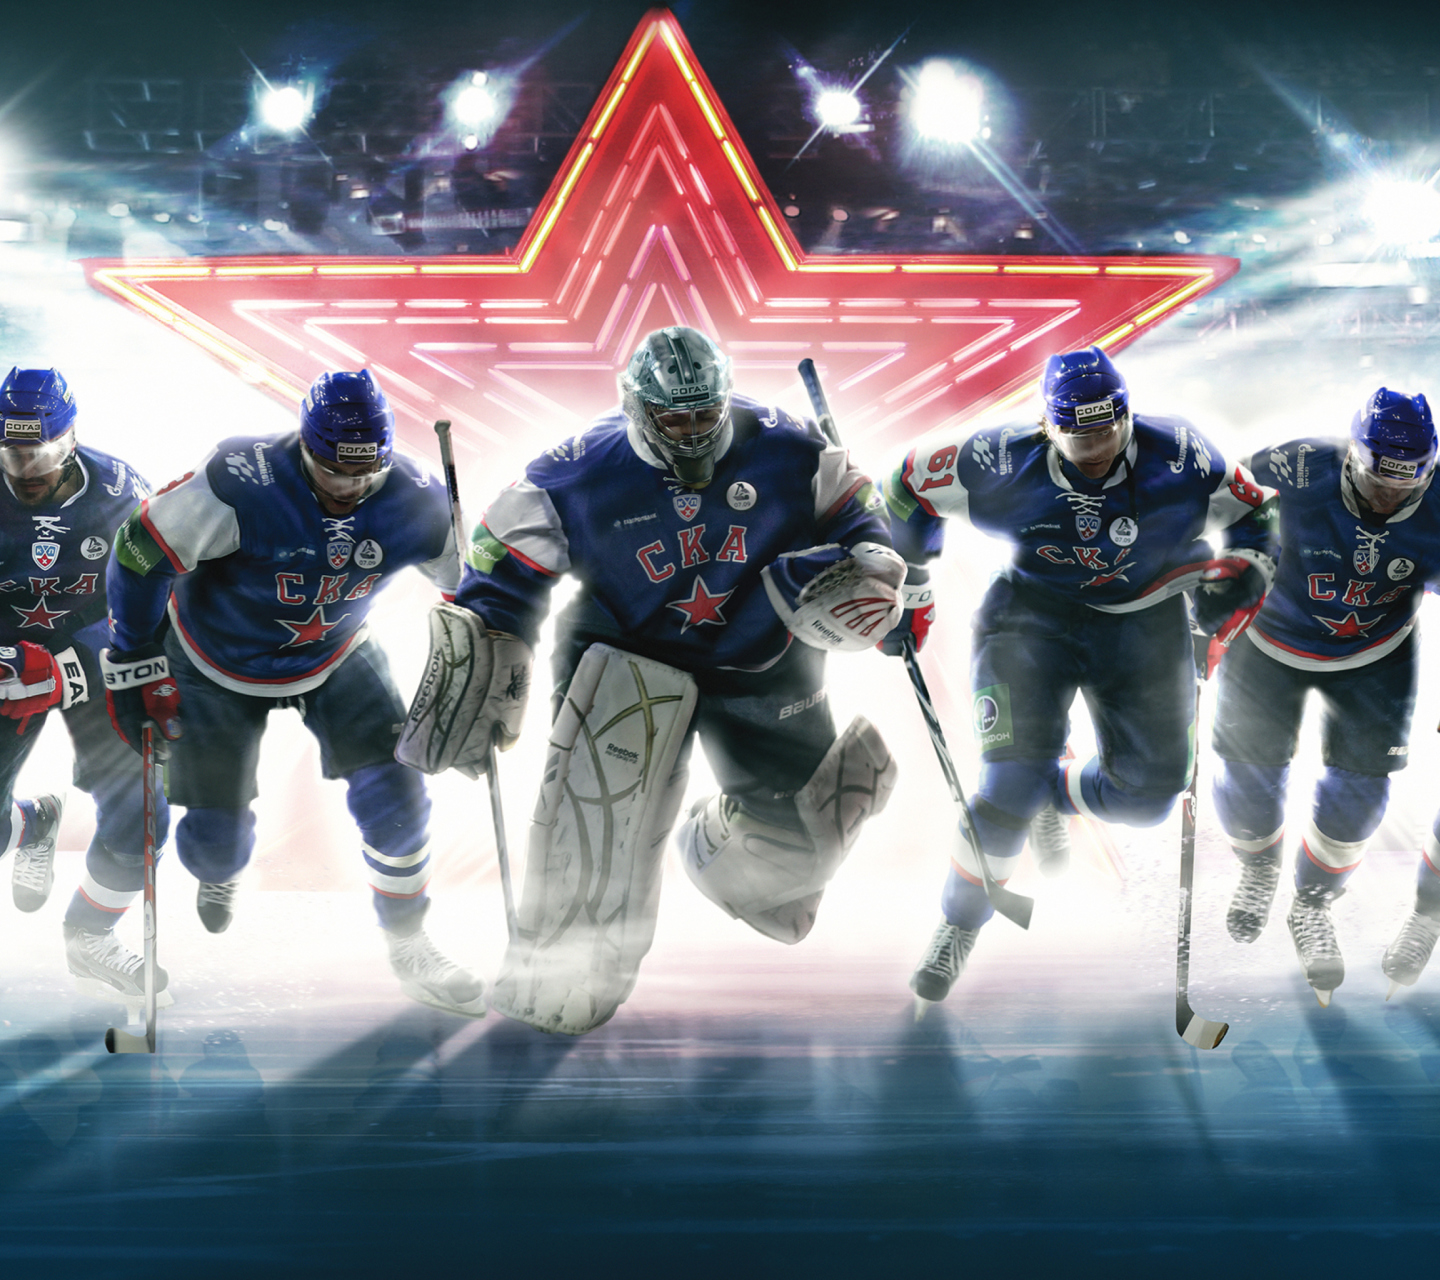 SKA Hockey Team wallpaper 1440x1280